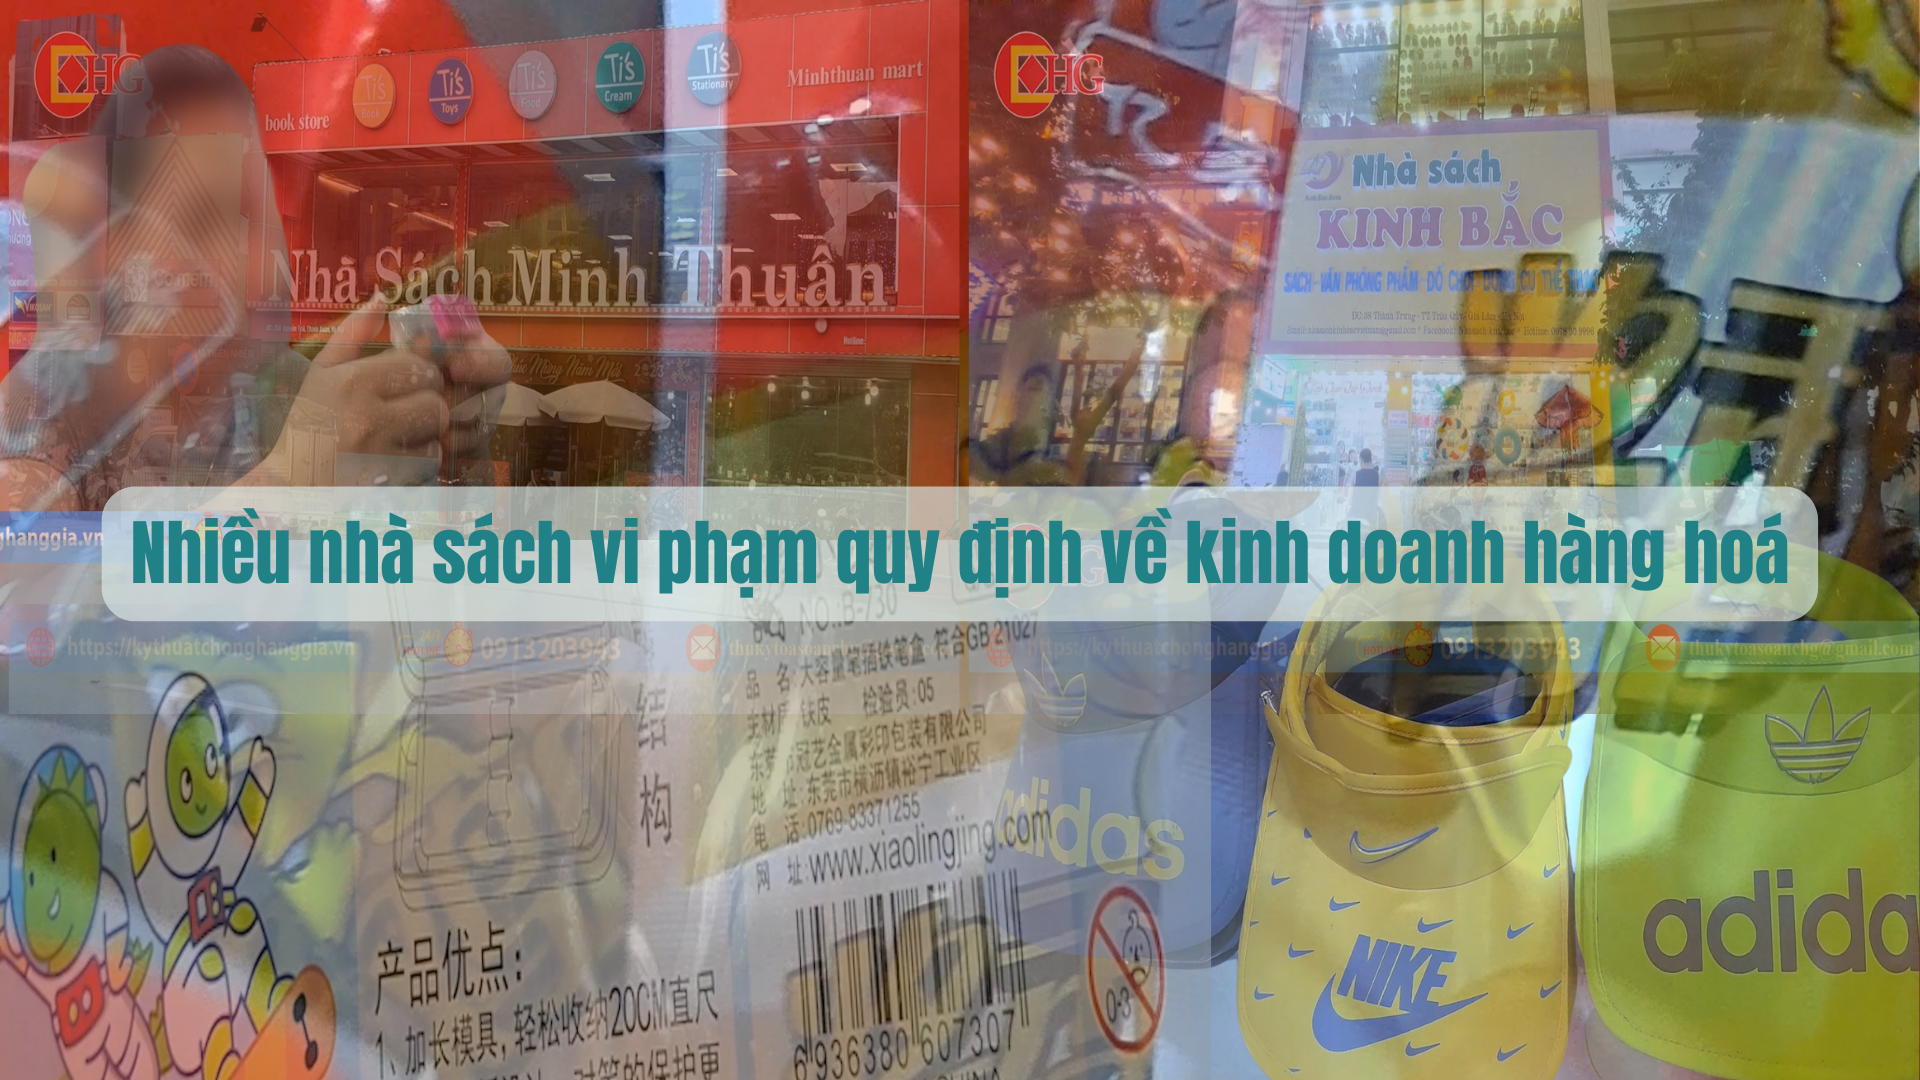 Hà Nội: Nhiều nhà sách vi phạm quy định về kinh doanh hàng hoá